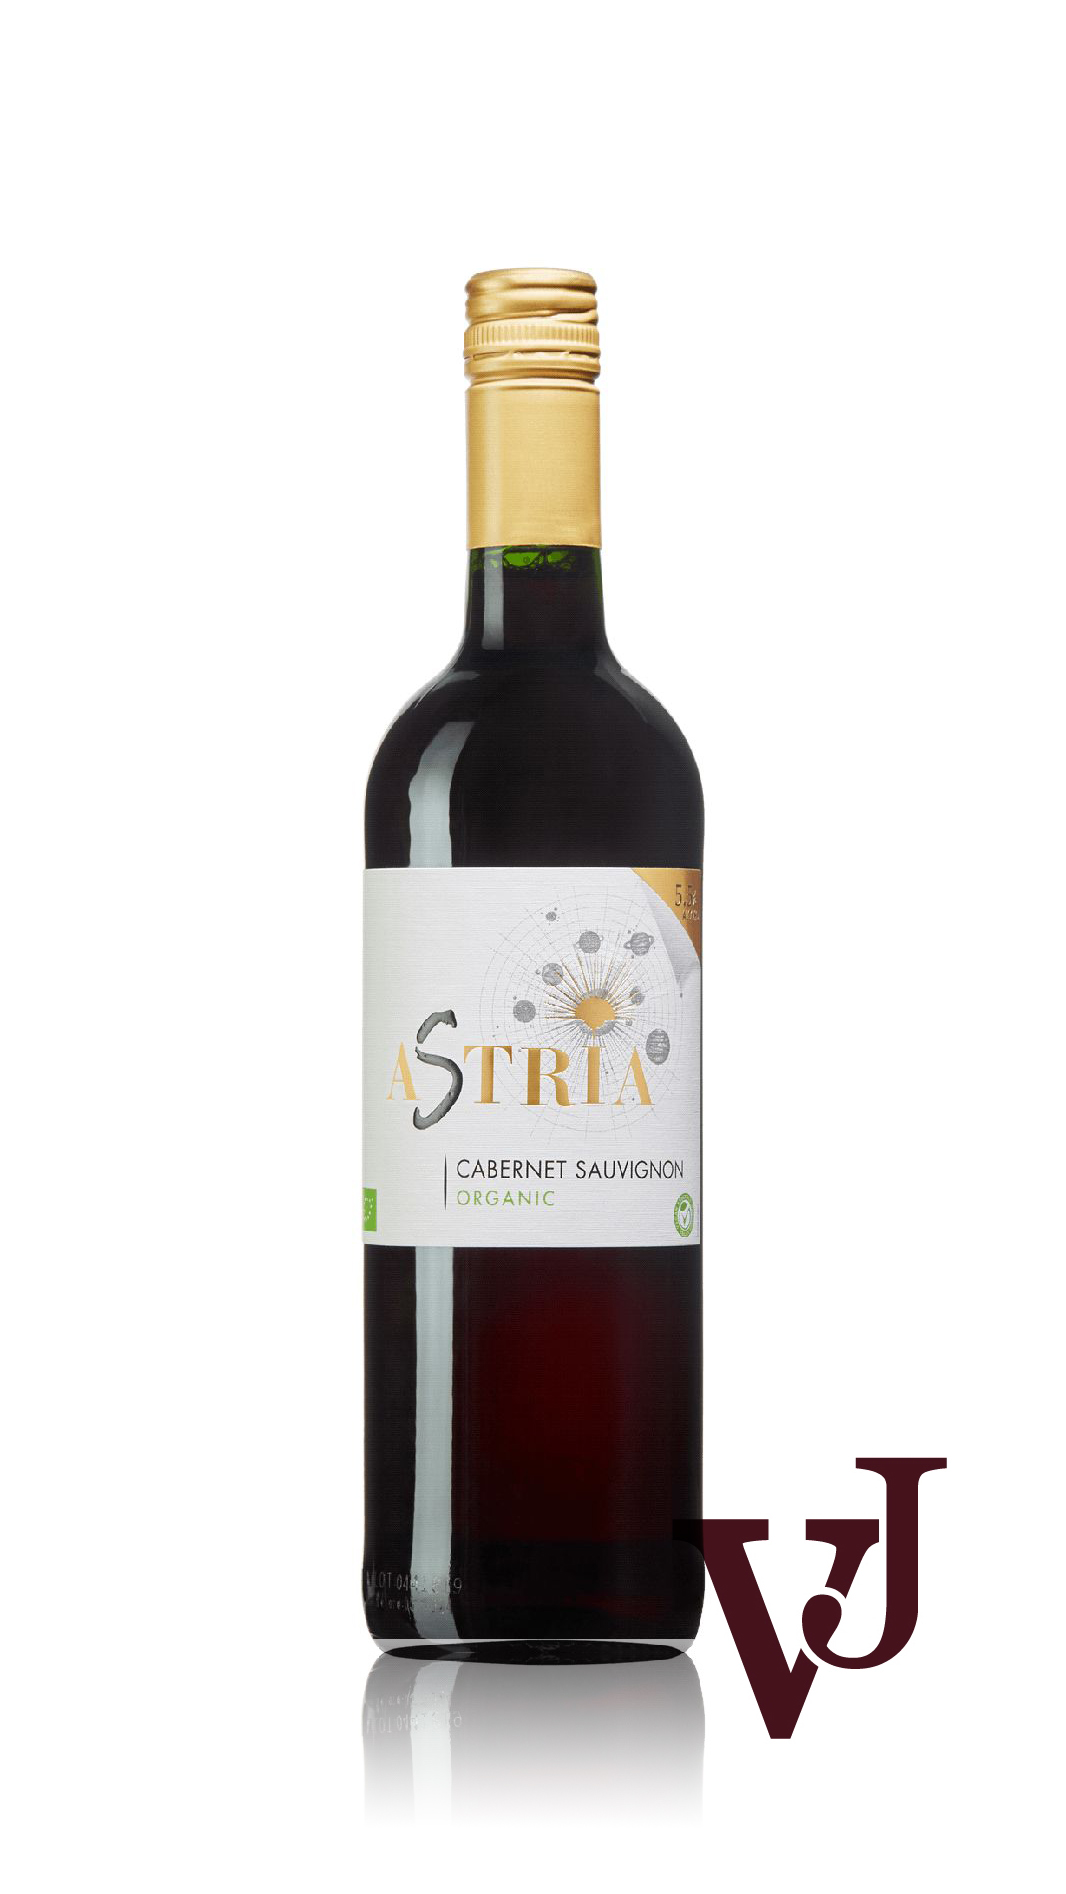 Rött Vin - Astria Cabernet Sauvignon artikel nummer 661001 från producenten Domaines Pierre Chavin från området Frankrike